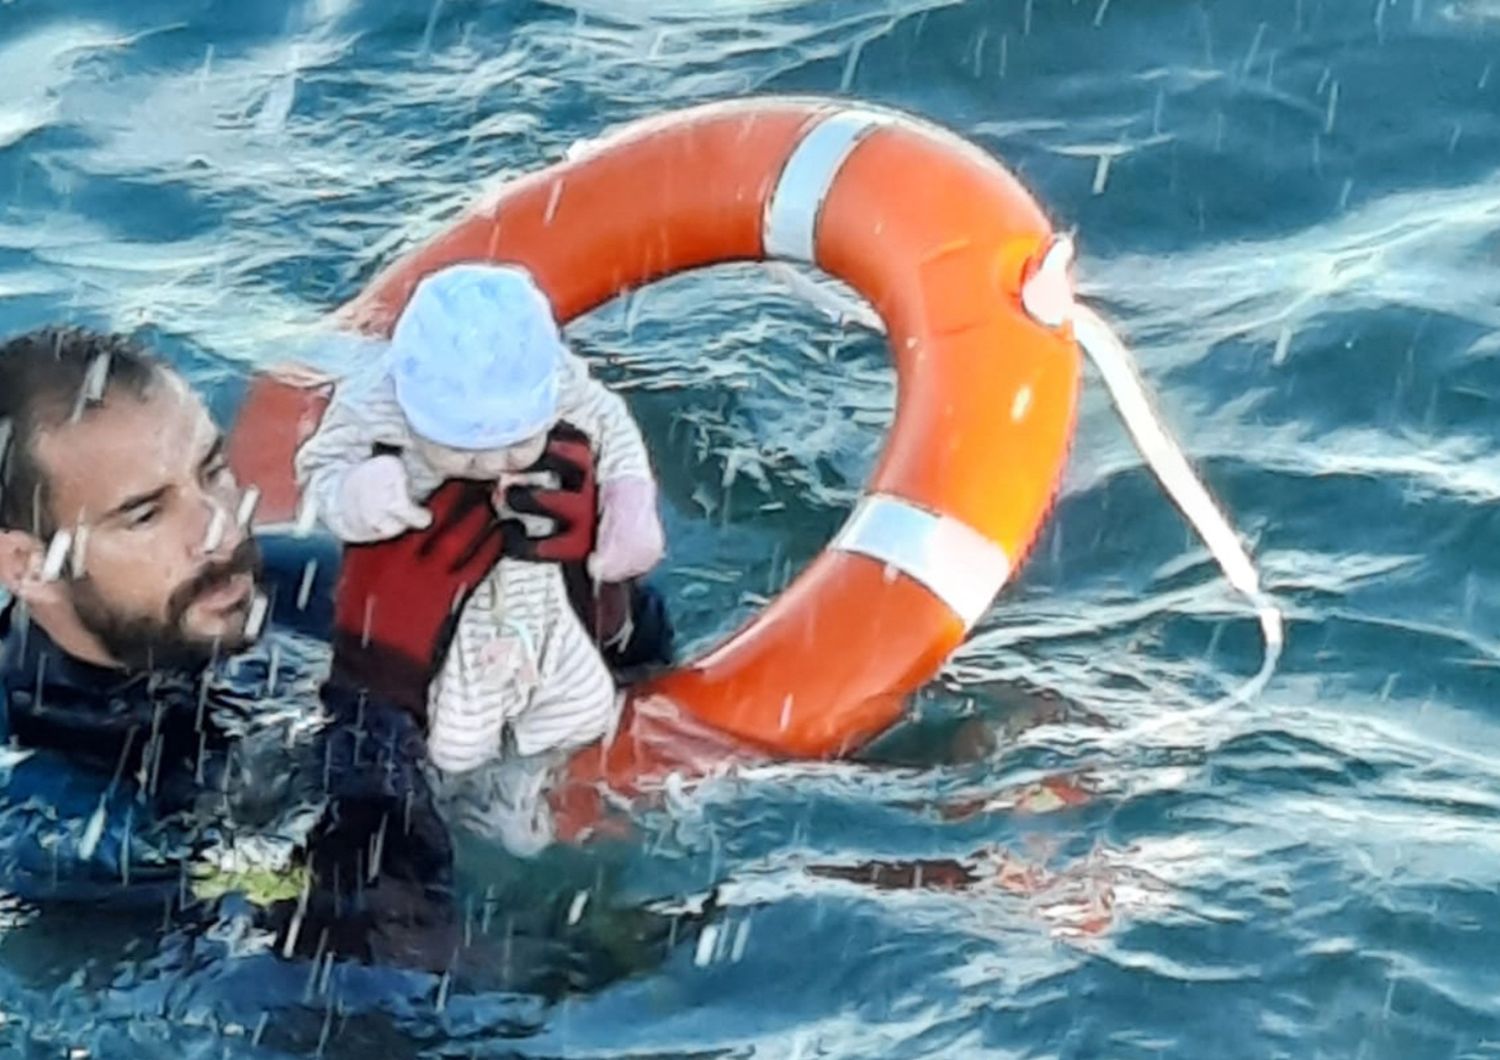 Il salvataggio del neonato caduto in mare a Ceuta